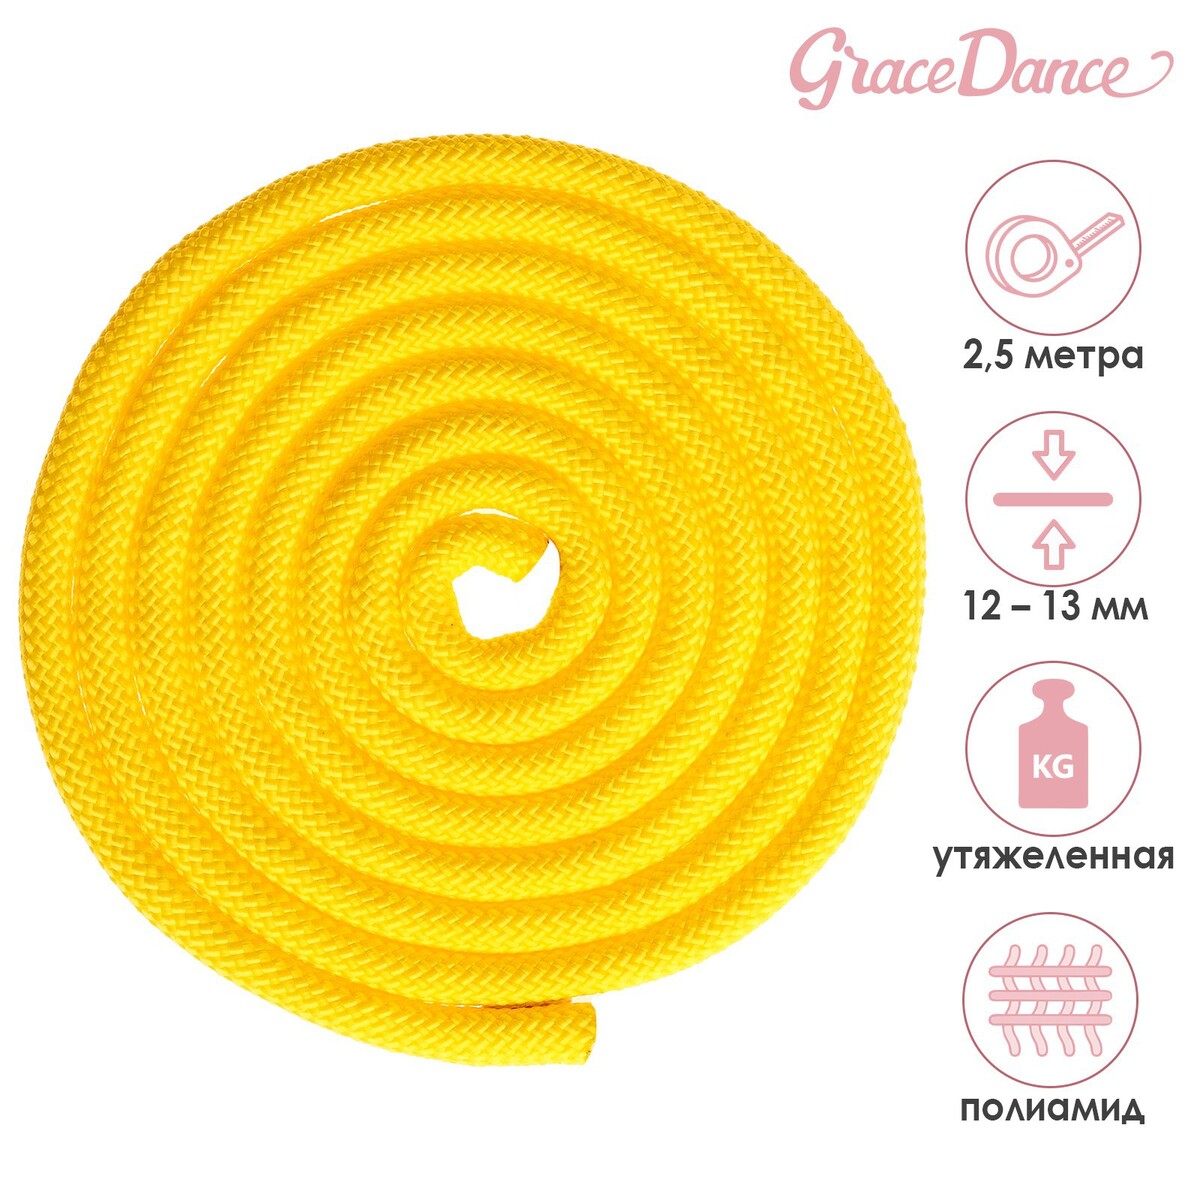 Скакалка для художественной гимнастики утяжеленная grace dance, 2,5 м, цвет желтый скакалка гимнастическая grace dance 3 м желтый